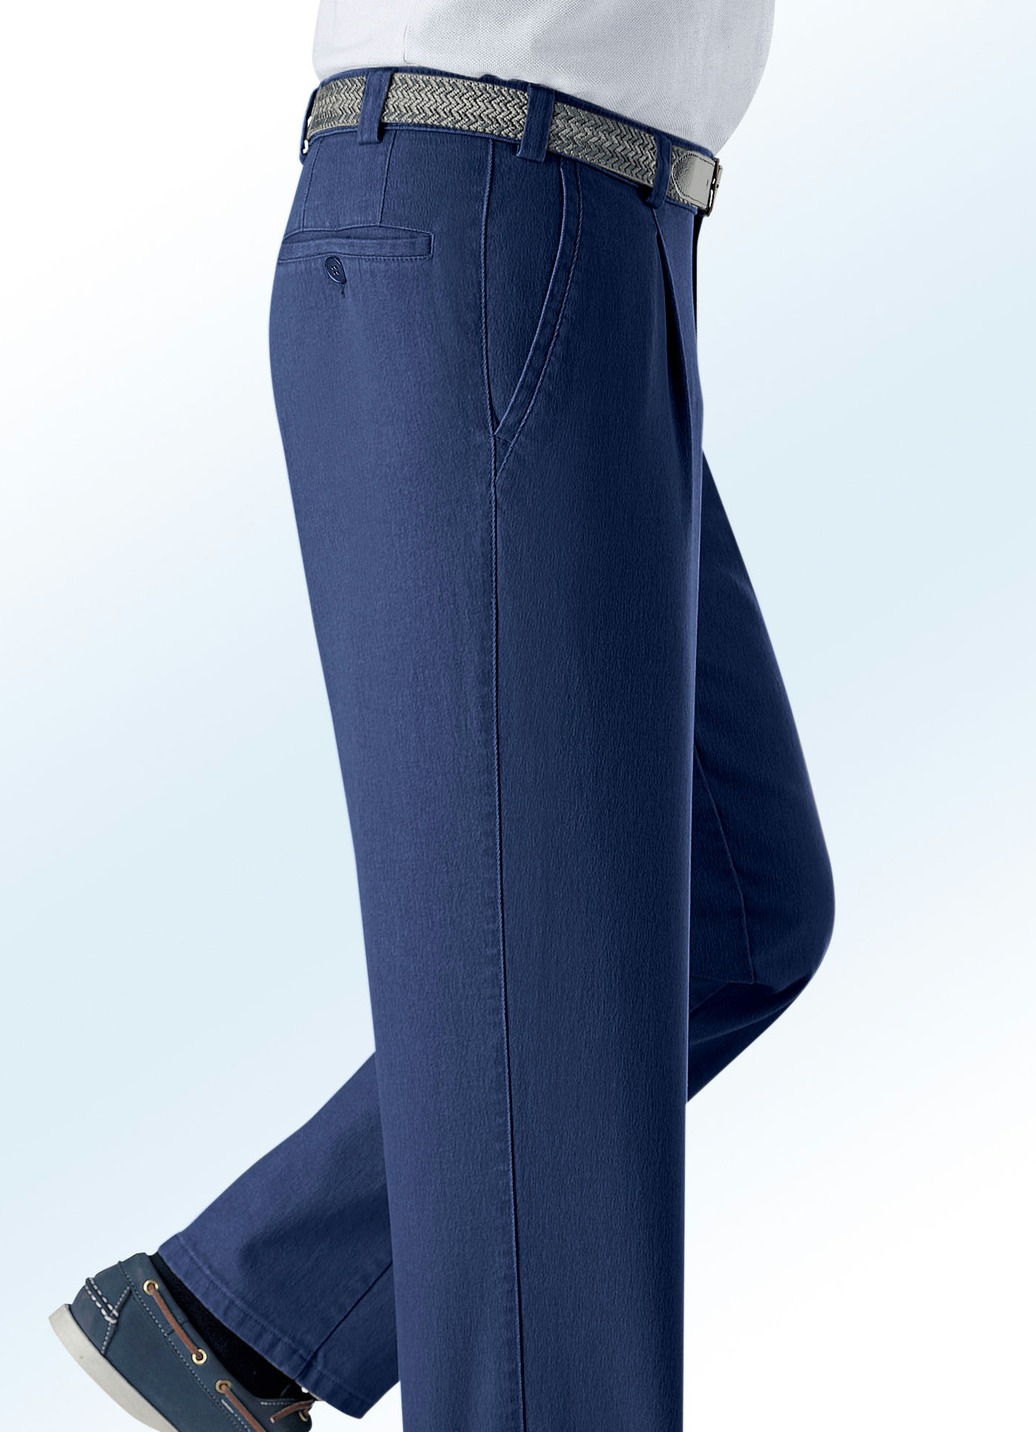 Unterbauch-Jeans mit Gürtel in 3 Farben, Jeansblau, Größe 60 von BADER